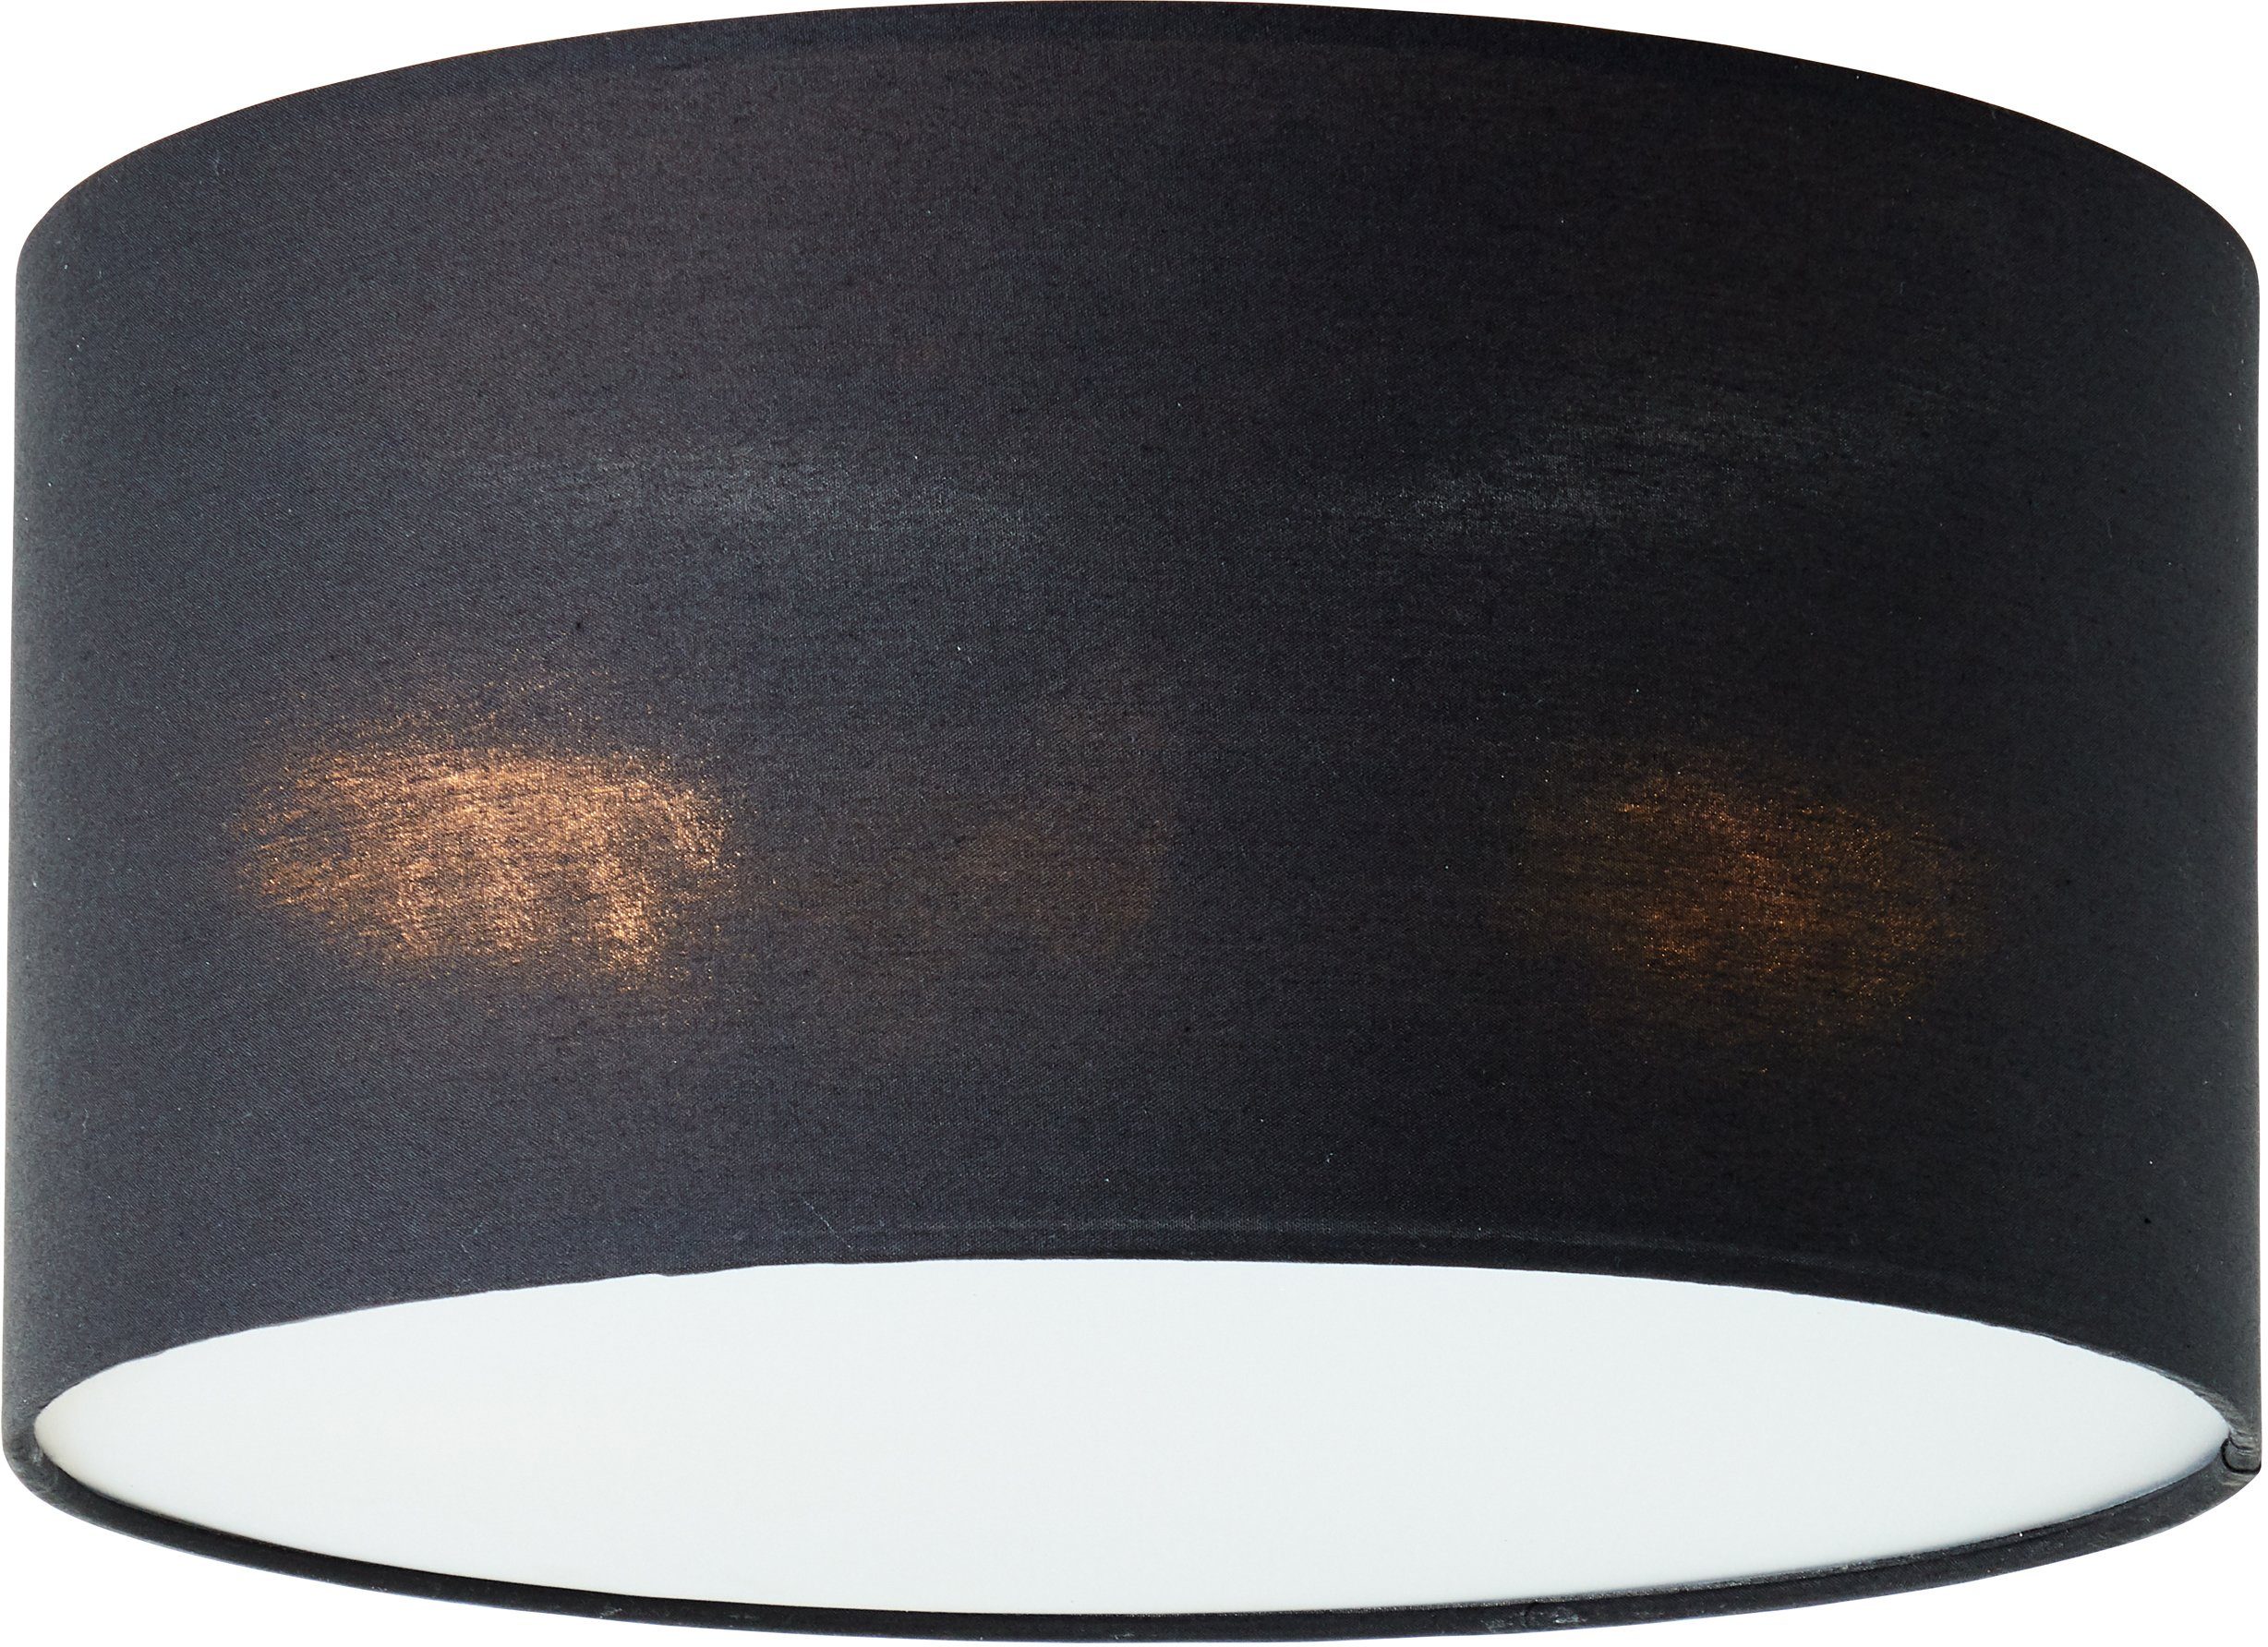 Places of Style Deckenleuchte mit schwarz Textilschirm ohne Elijah, 30cm Ø Deckenlampe Leuchtmittel